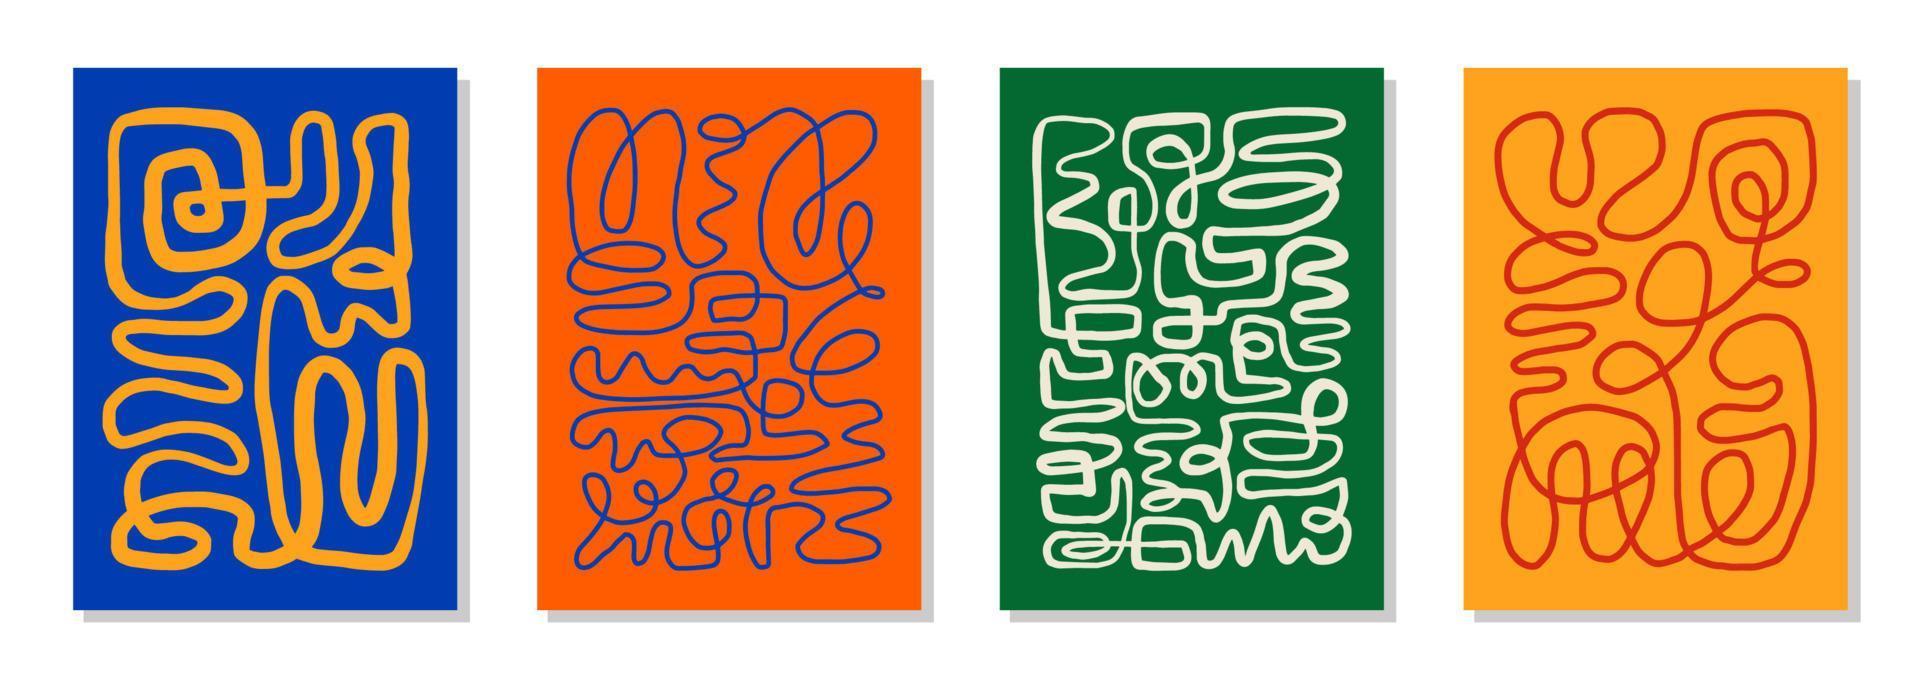 set di 4 poster artistici da parete ispirati a Matisse, brochure, modelli di volantini, collage contemporaneo. disegno disegnato a mano astratto di una linea organica, carta da parati. vettore vintage grafico di forme dinamiche